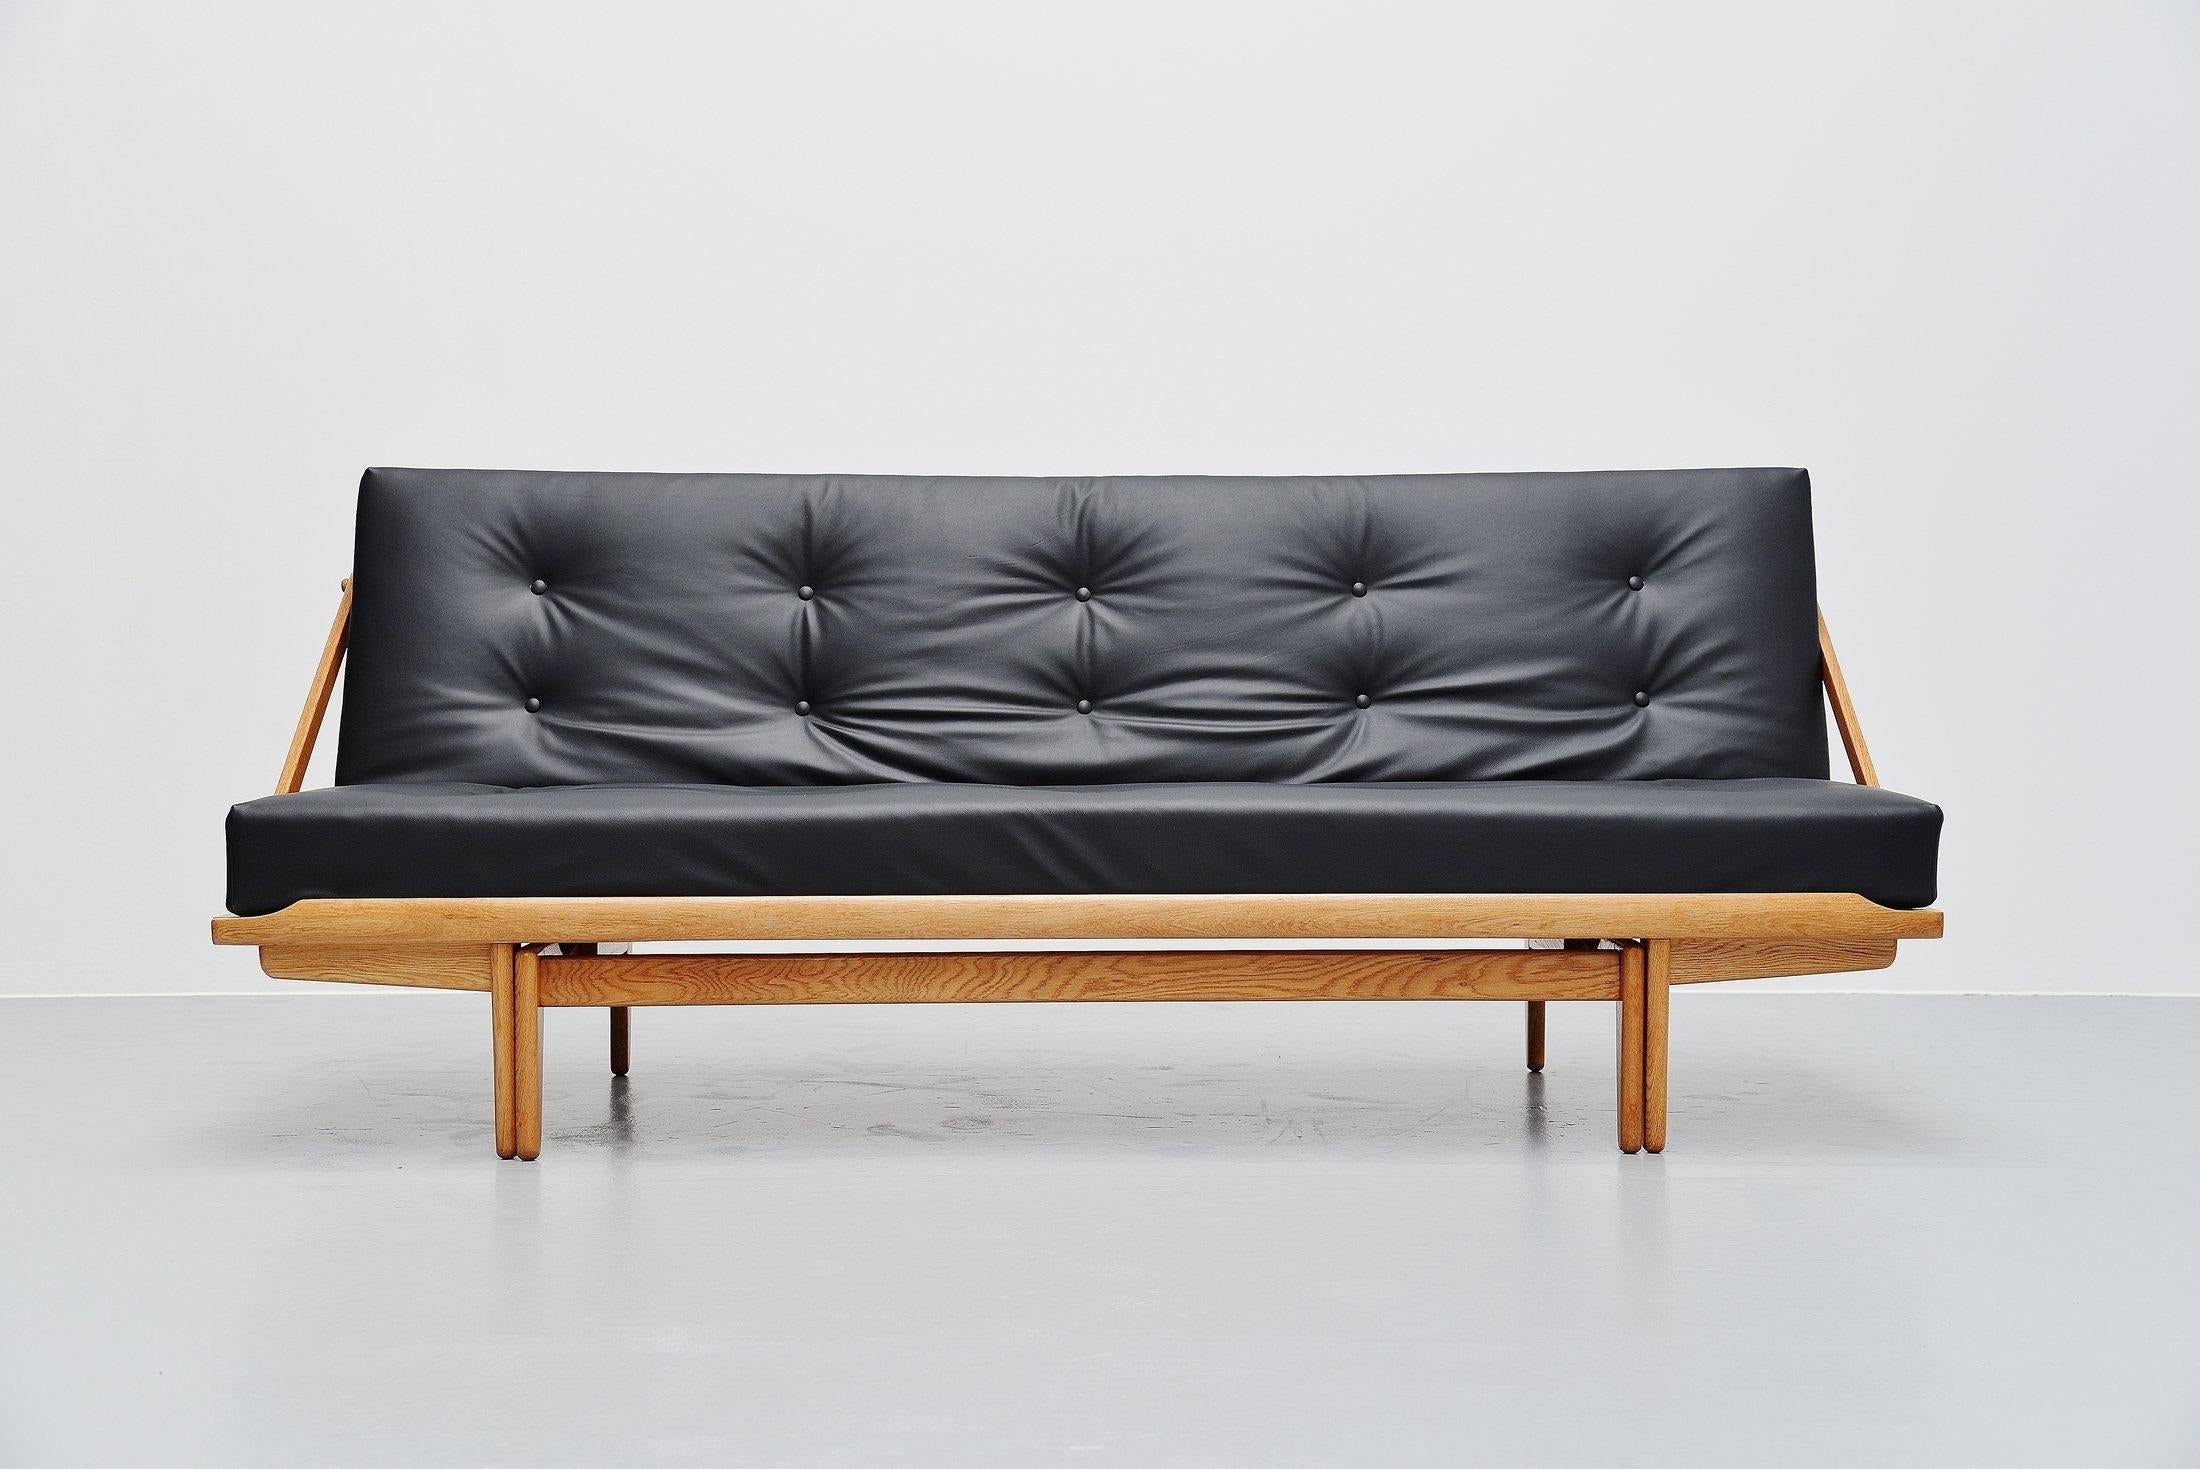 Très beau canapé-lit sophistiqué Modèle 981 conçu par Poul M-One et fabriqué par Gemla, Danemark, 1959. Ce canapé, appelé 